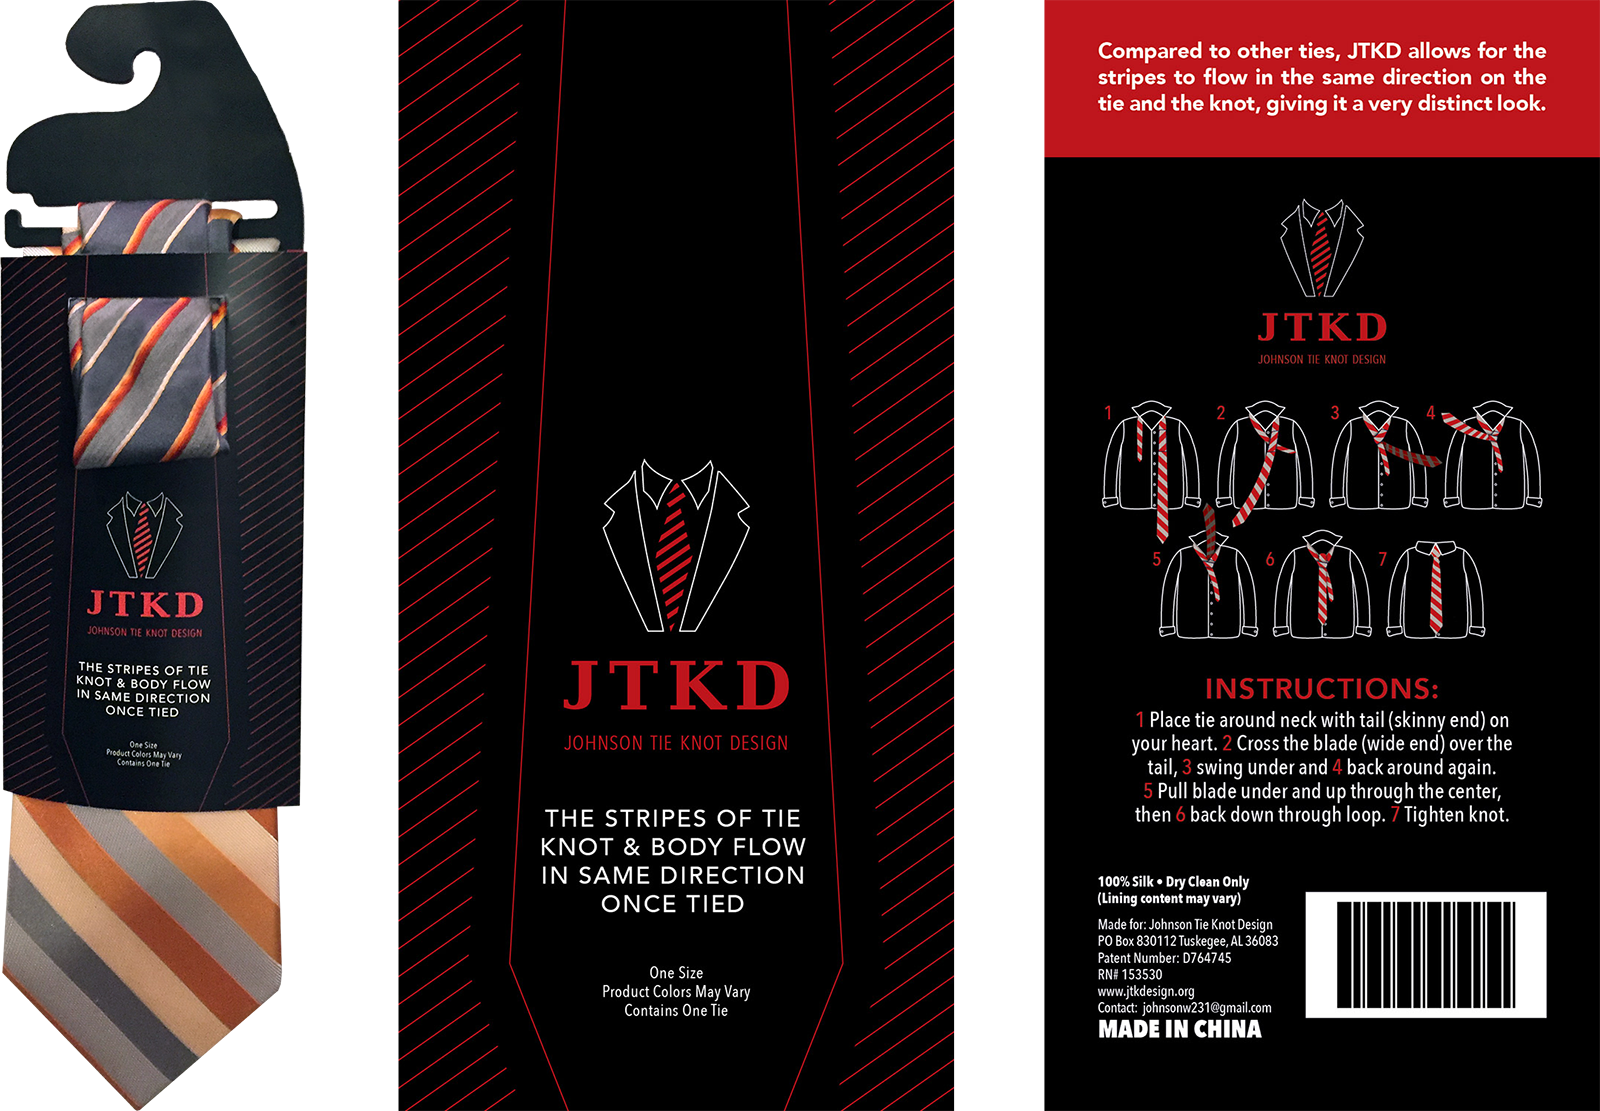 packaging design for inventors - logo design for inventors - JTKD Johnson Tie Knot Design Innovative tie design, cardstock packaging with plastic hanger, instruction design